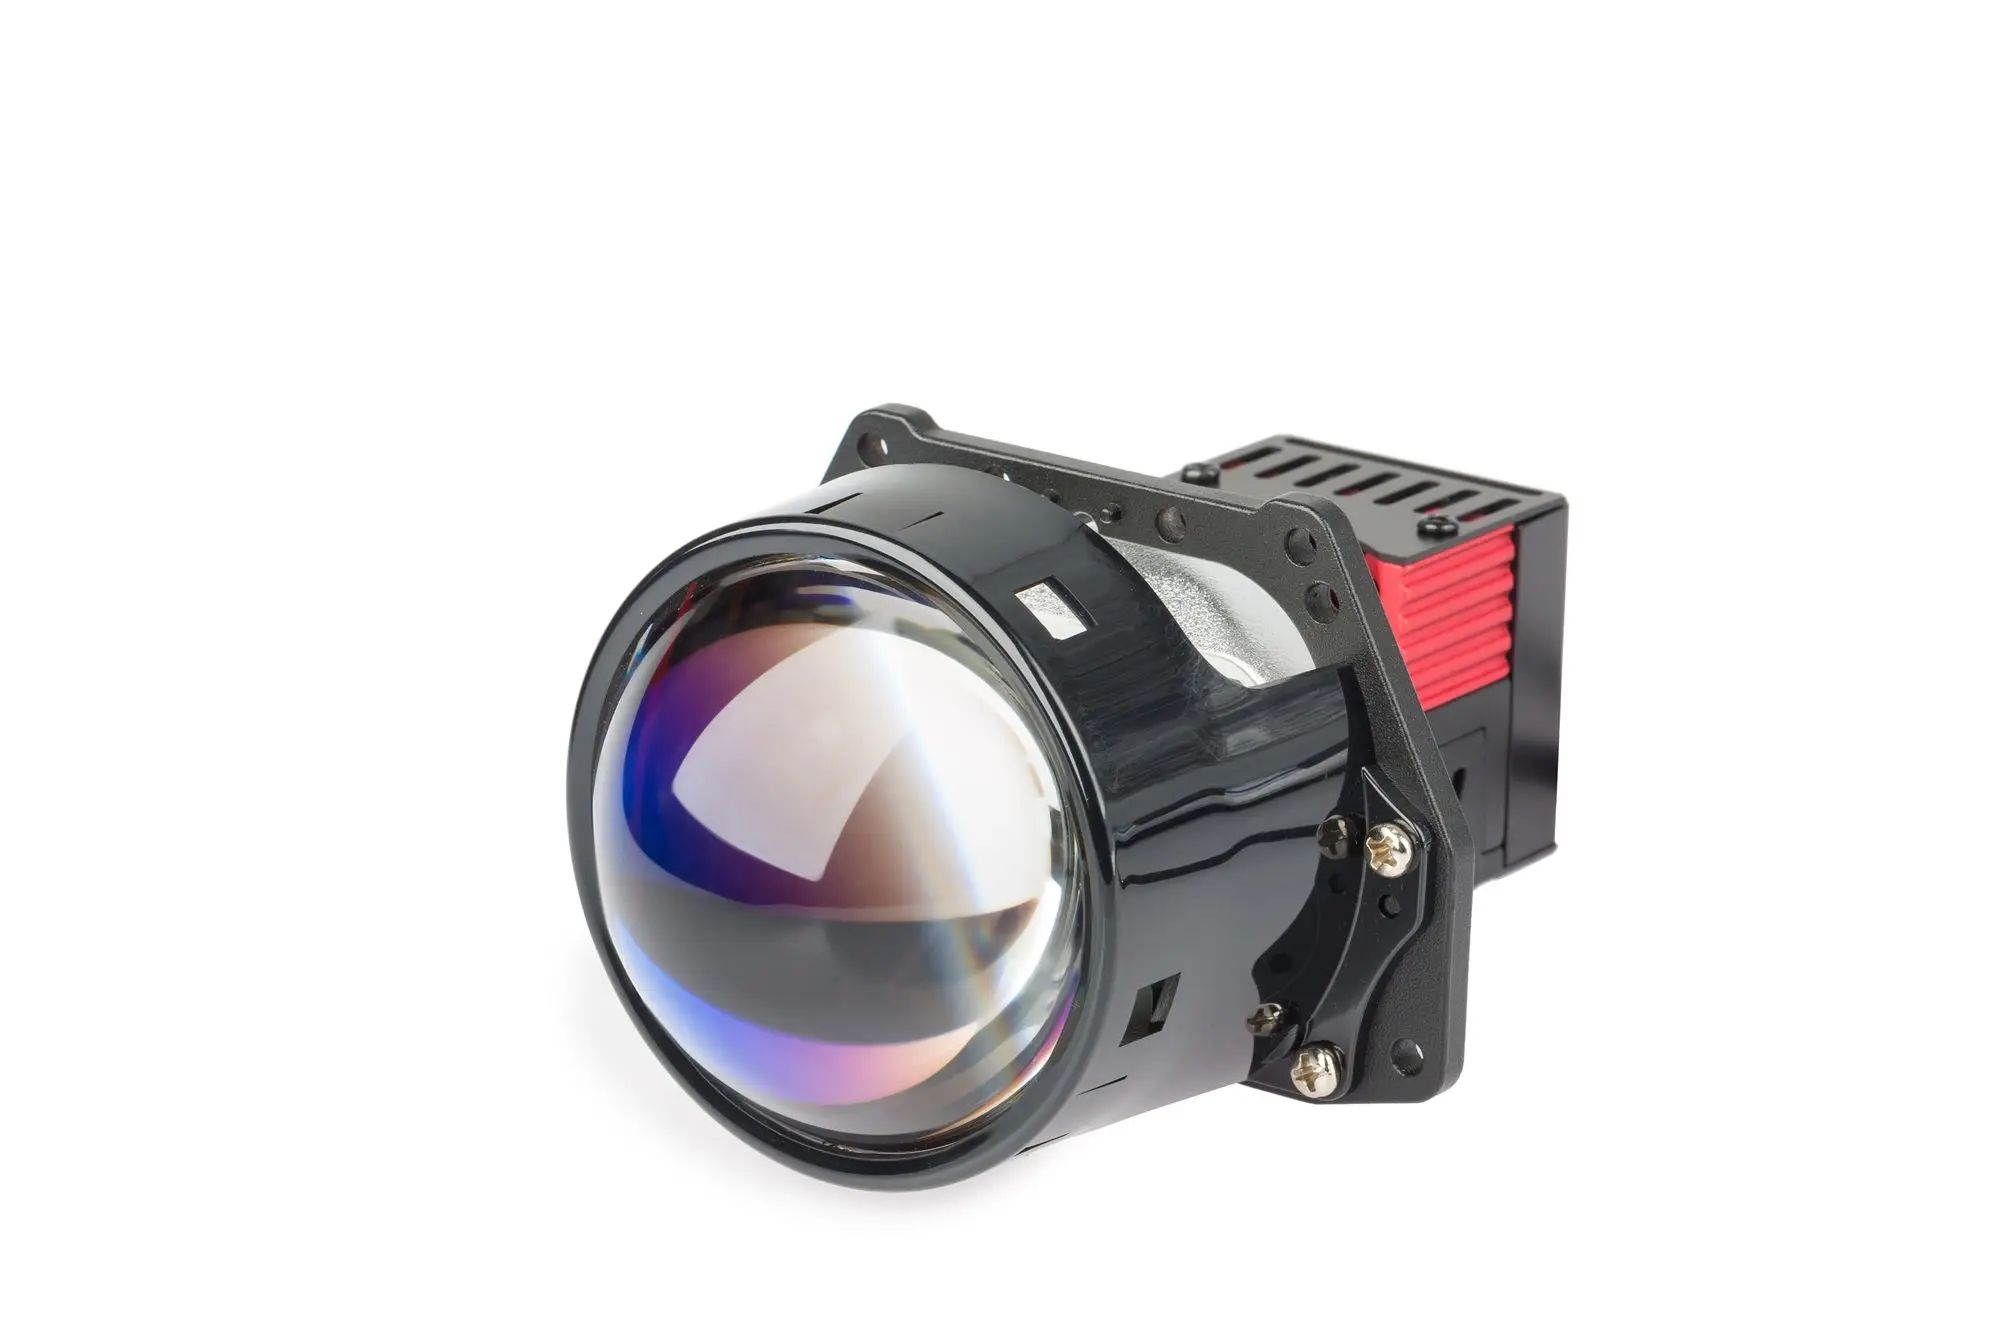 Комплект bi led. Optima Premium bi-led Lens, призматическая система Sensation Drive 3.0. Optimа Waterproof Lens 3.0" h11. Bi-led линзы Optima srt 24v. Комплект би-диодных линз Optima Premium reflektor Technology 3.0 5000k.